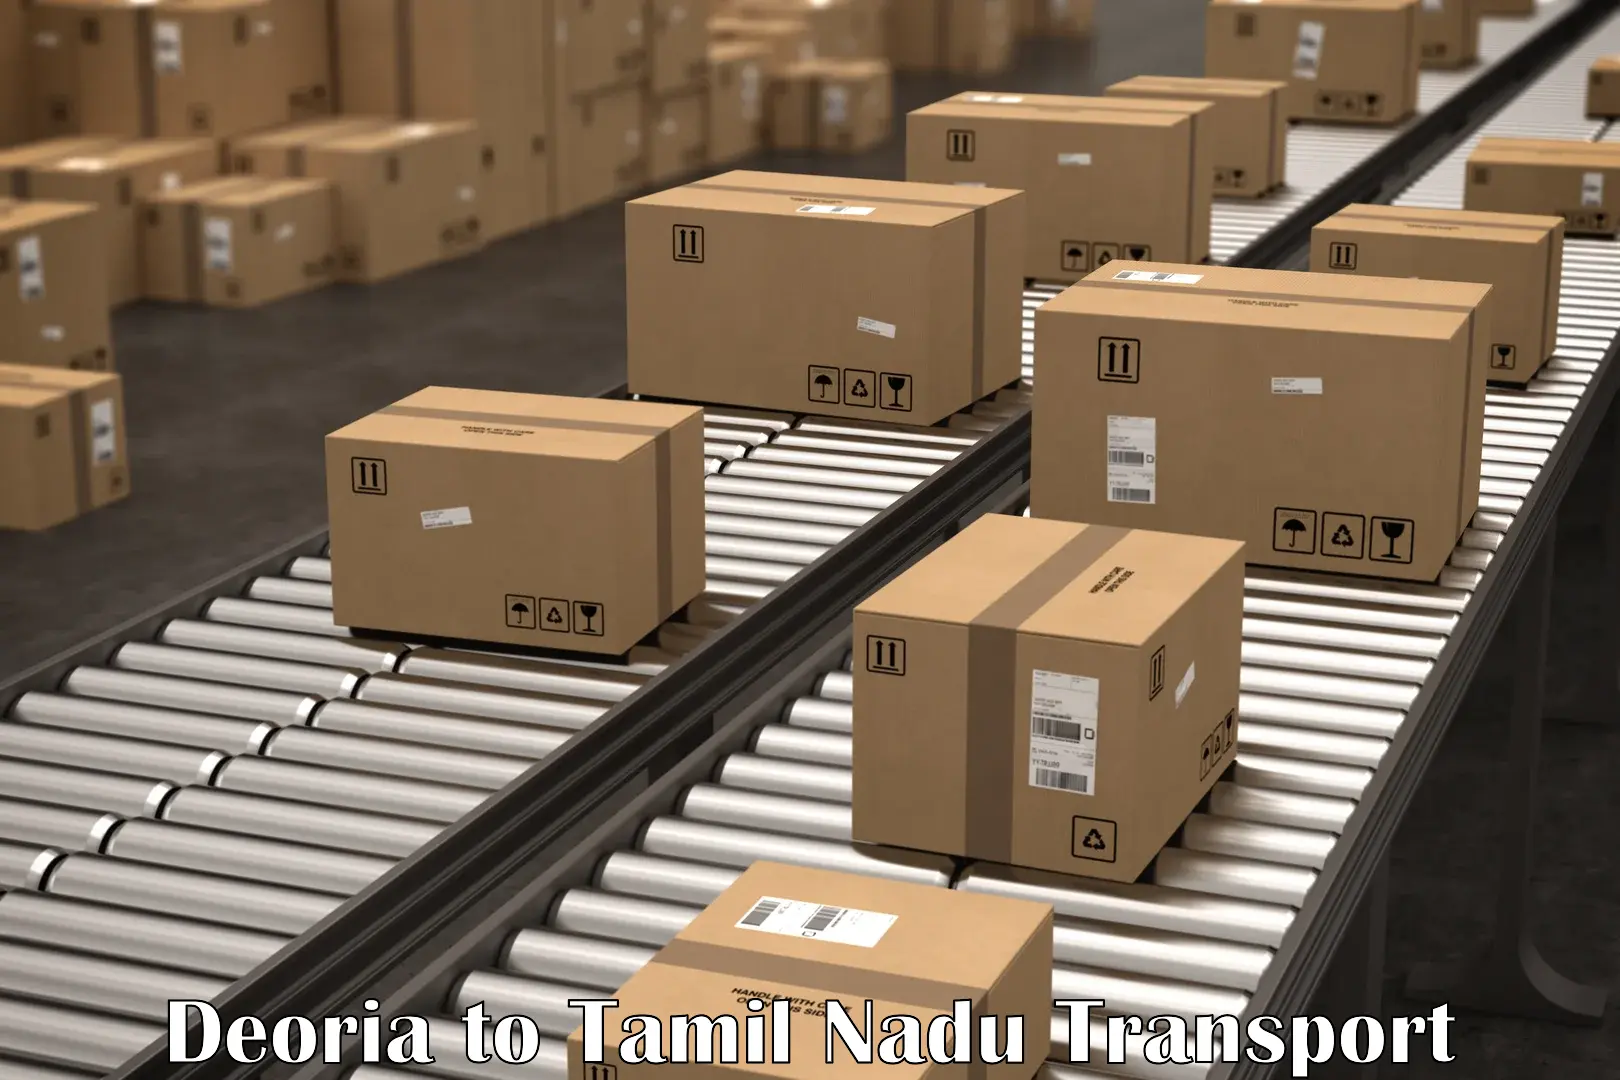 Furniture transport service Deoria to Tamil Nadu